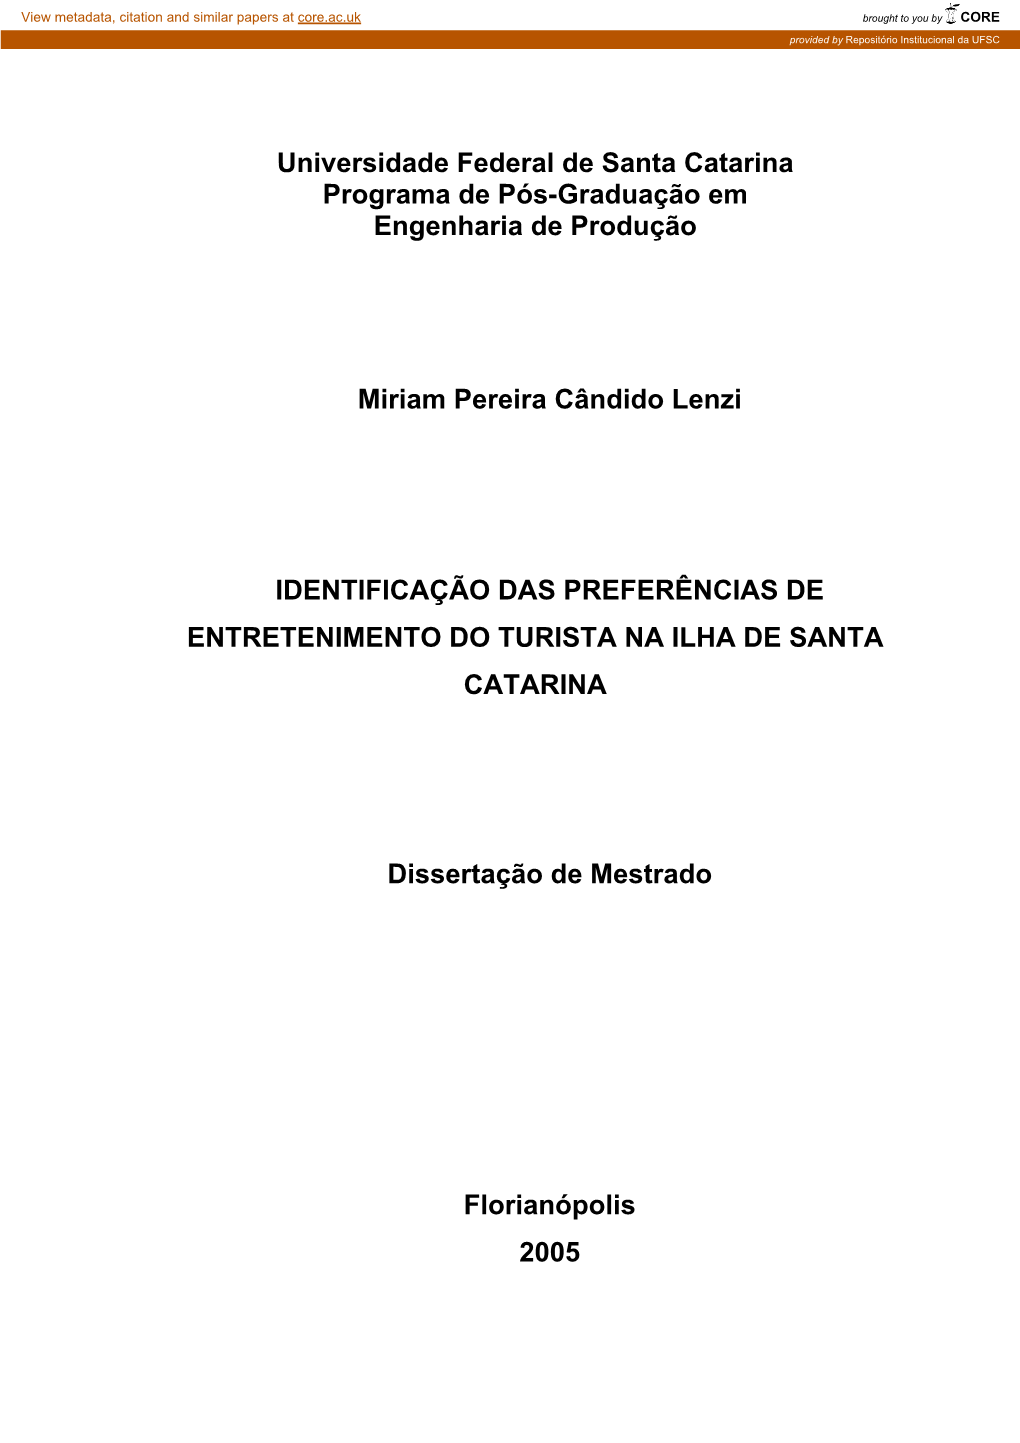 Universidade Federal De Santa Catarina Programa De Pós-Graduação Em Engenharia De Produção